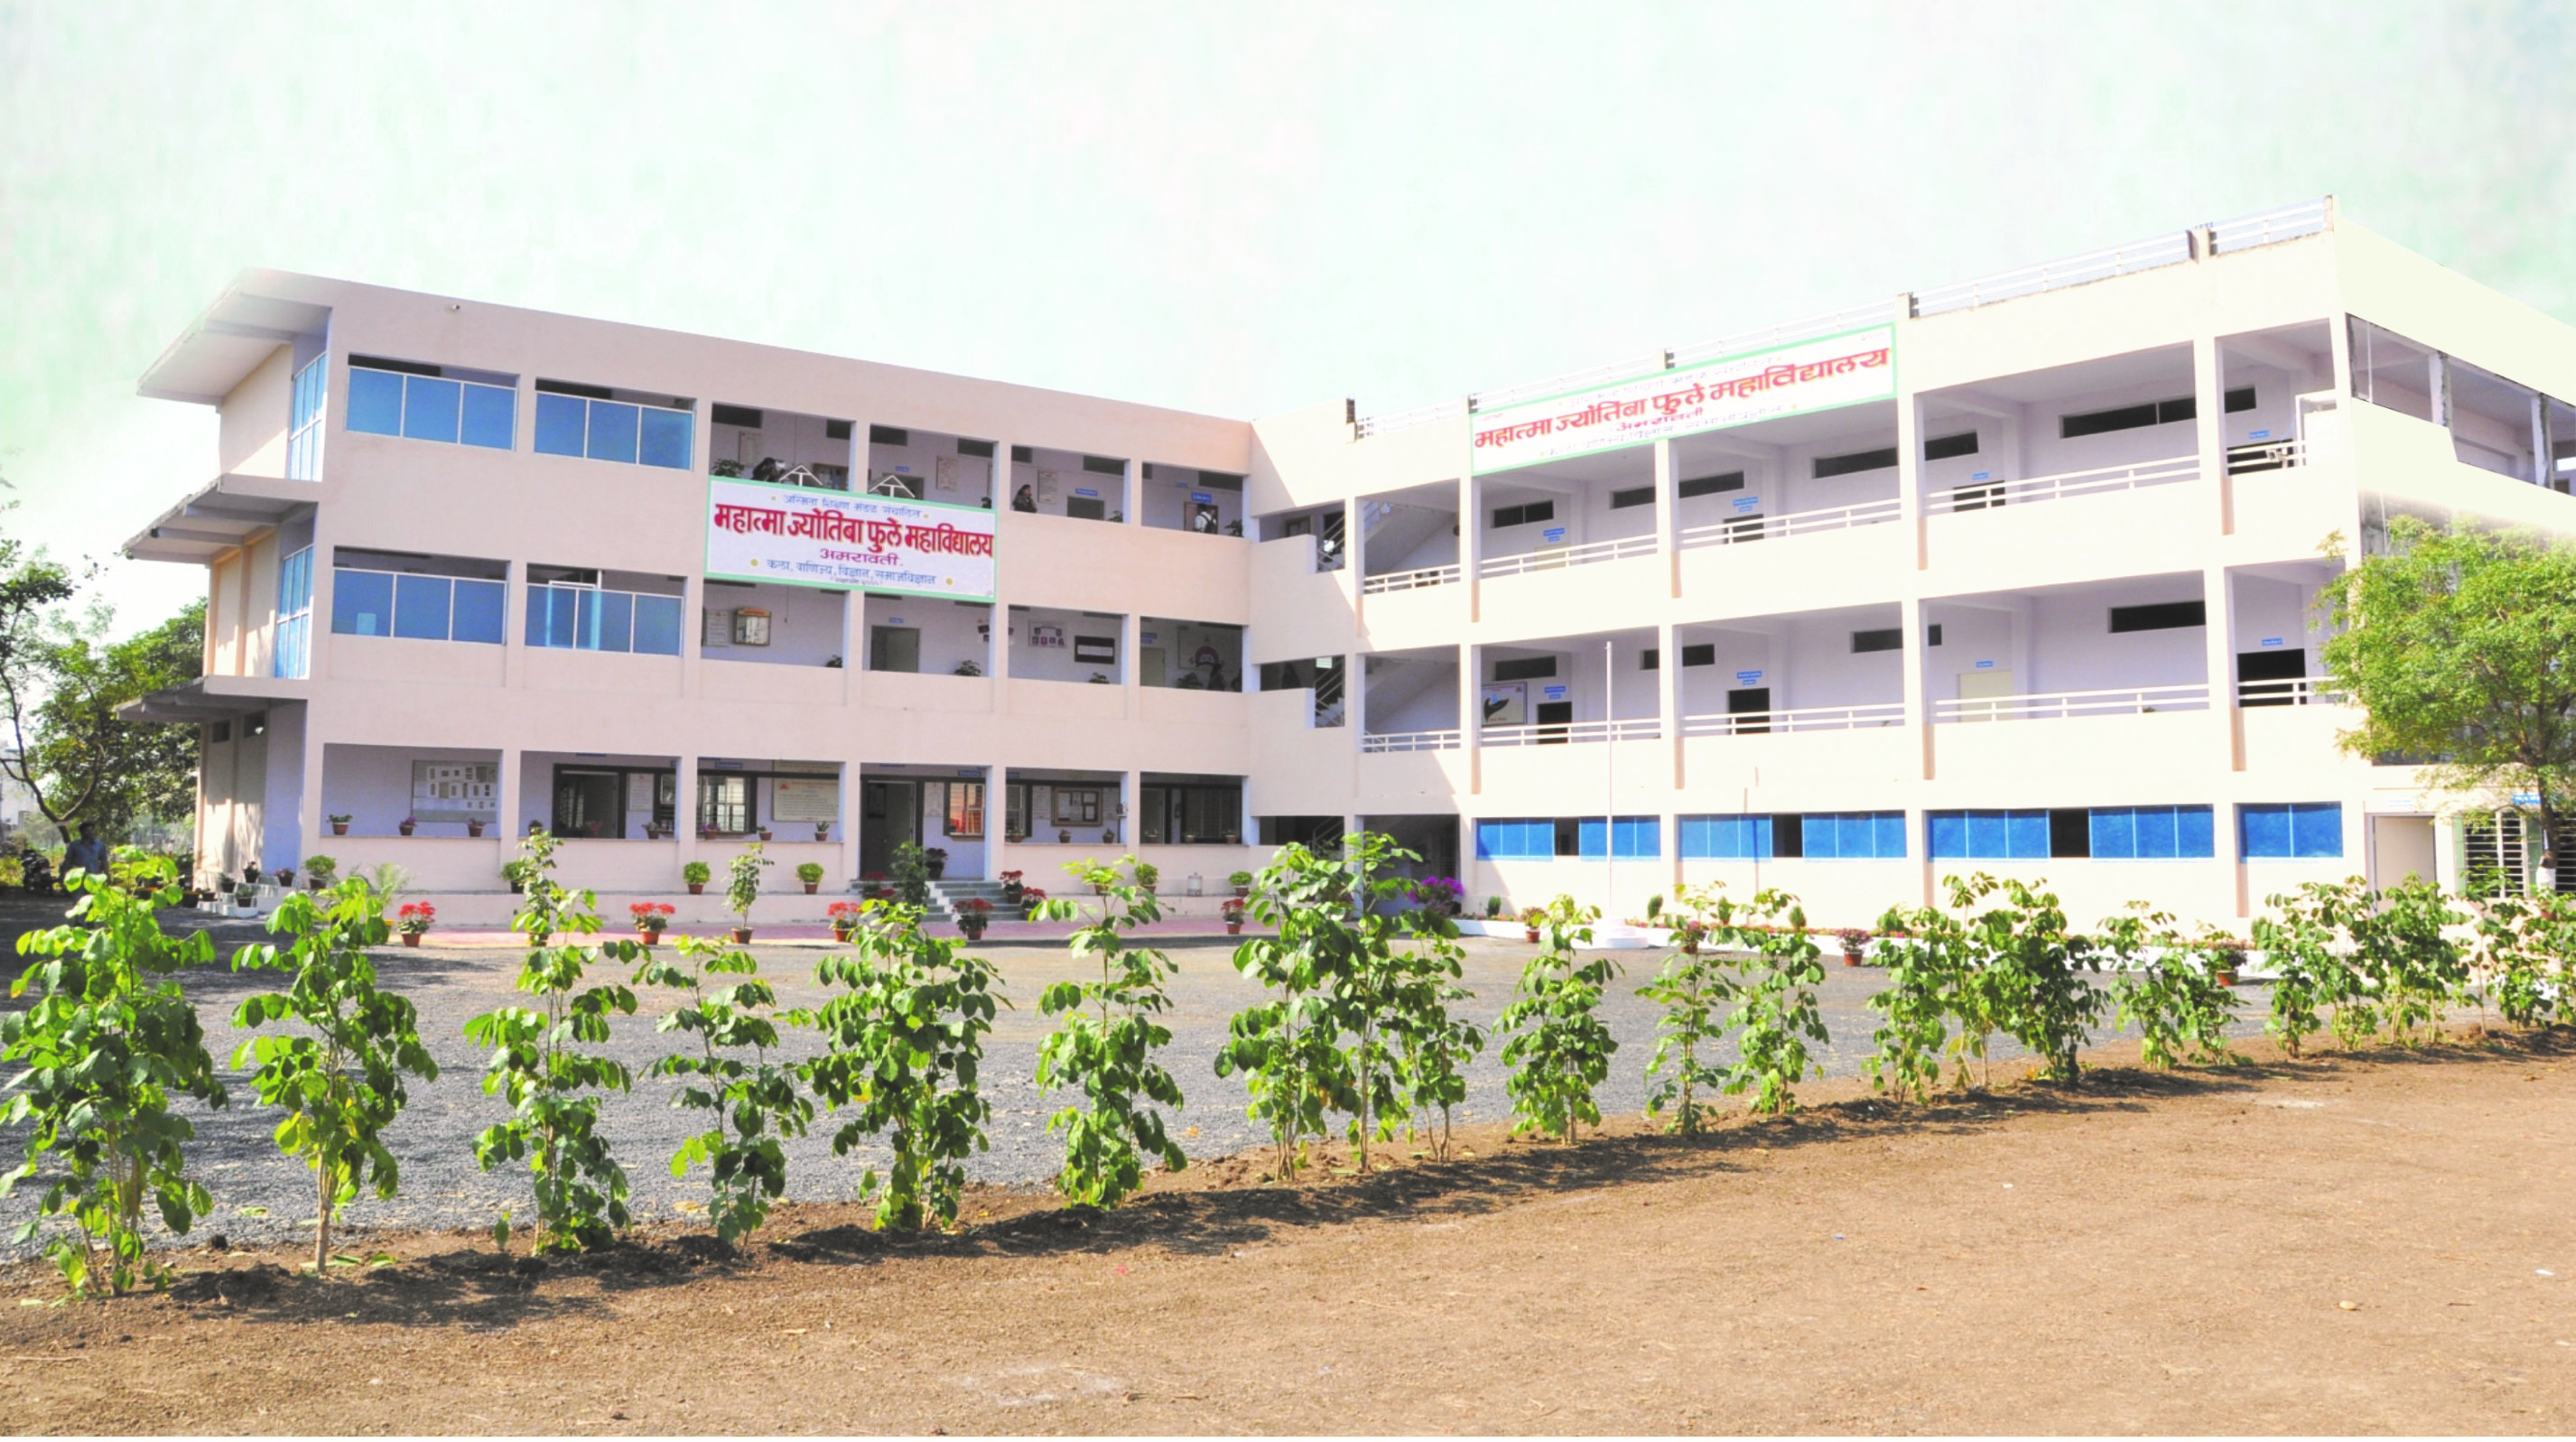 Mahatma Jyotiba Fule College, Amravati Image